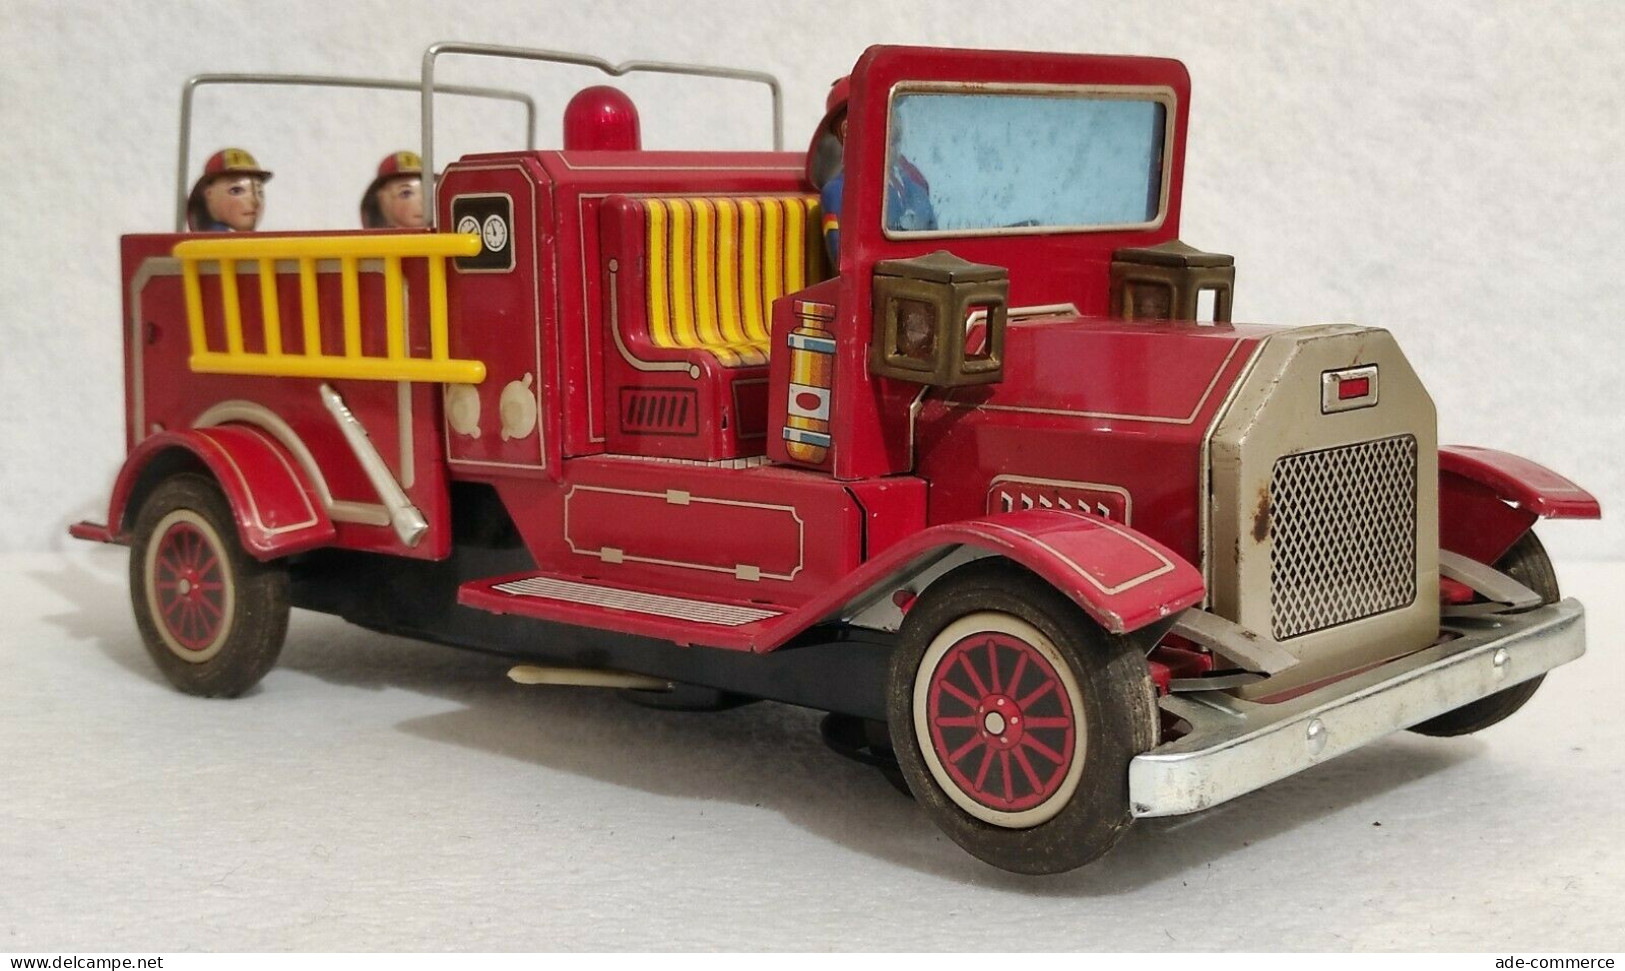 S.H Made in Japan Fire Truck - Pompieri - Giocattolo Latta Batteria - Vintage